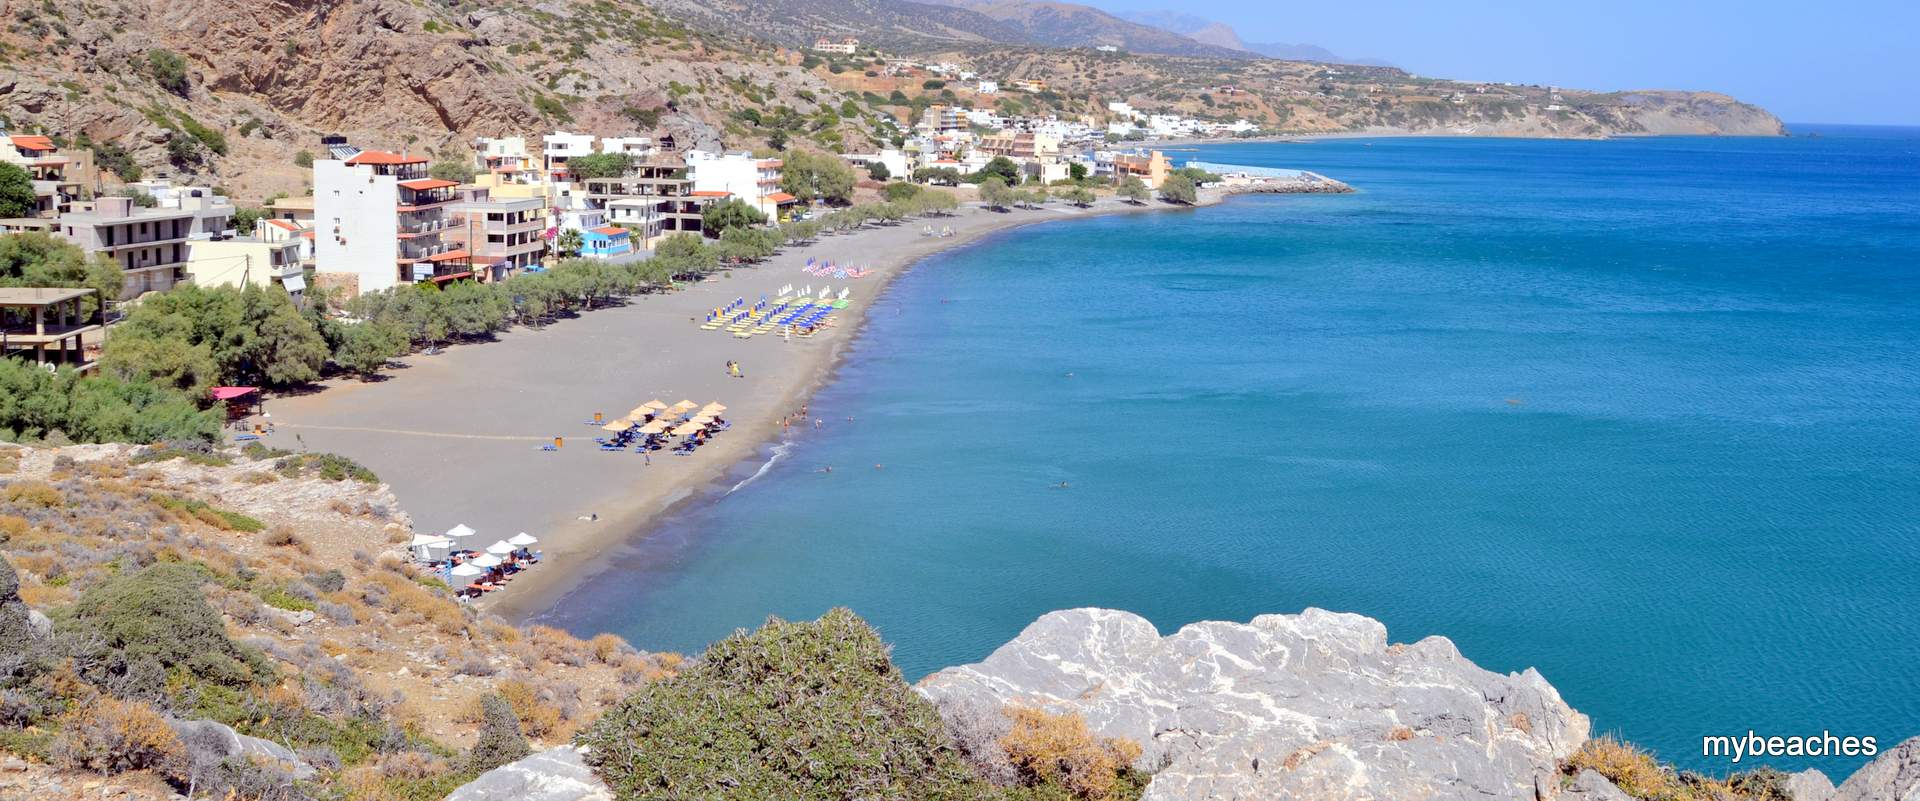 Τσούτσουρας παραλία, Ηράκλειο, Κρήτη, Ελλάδα